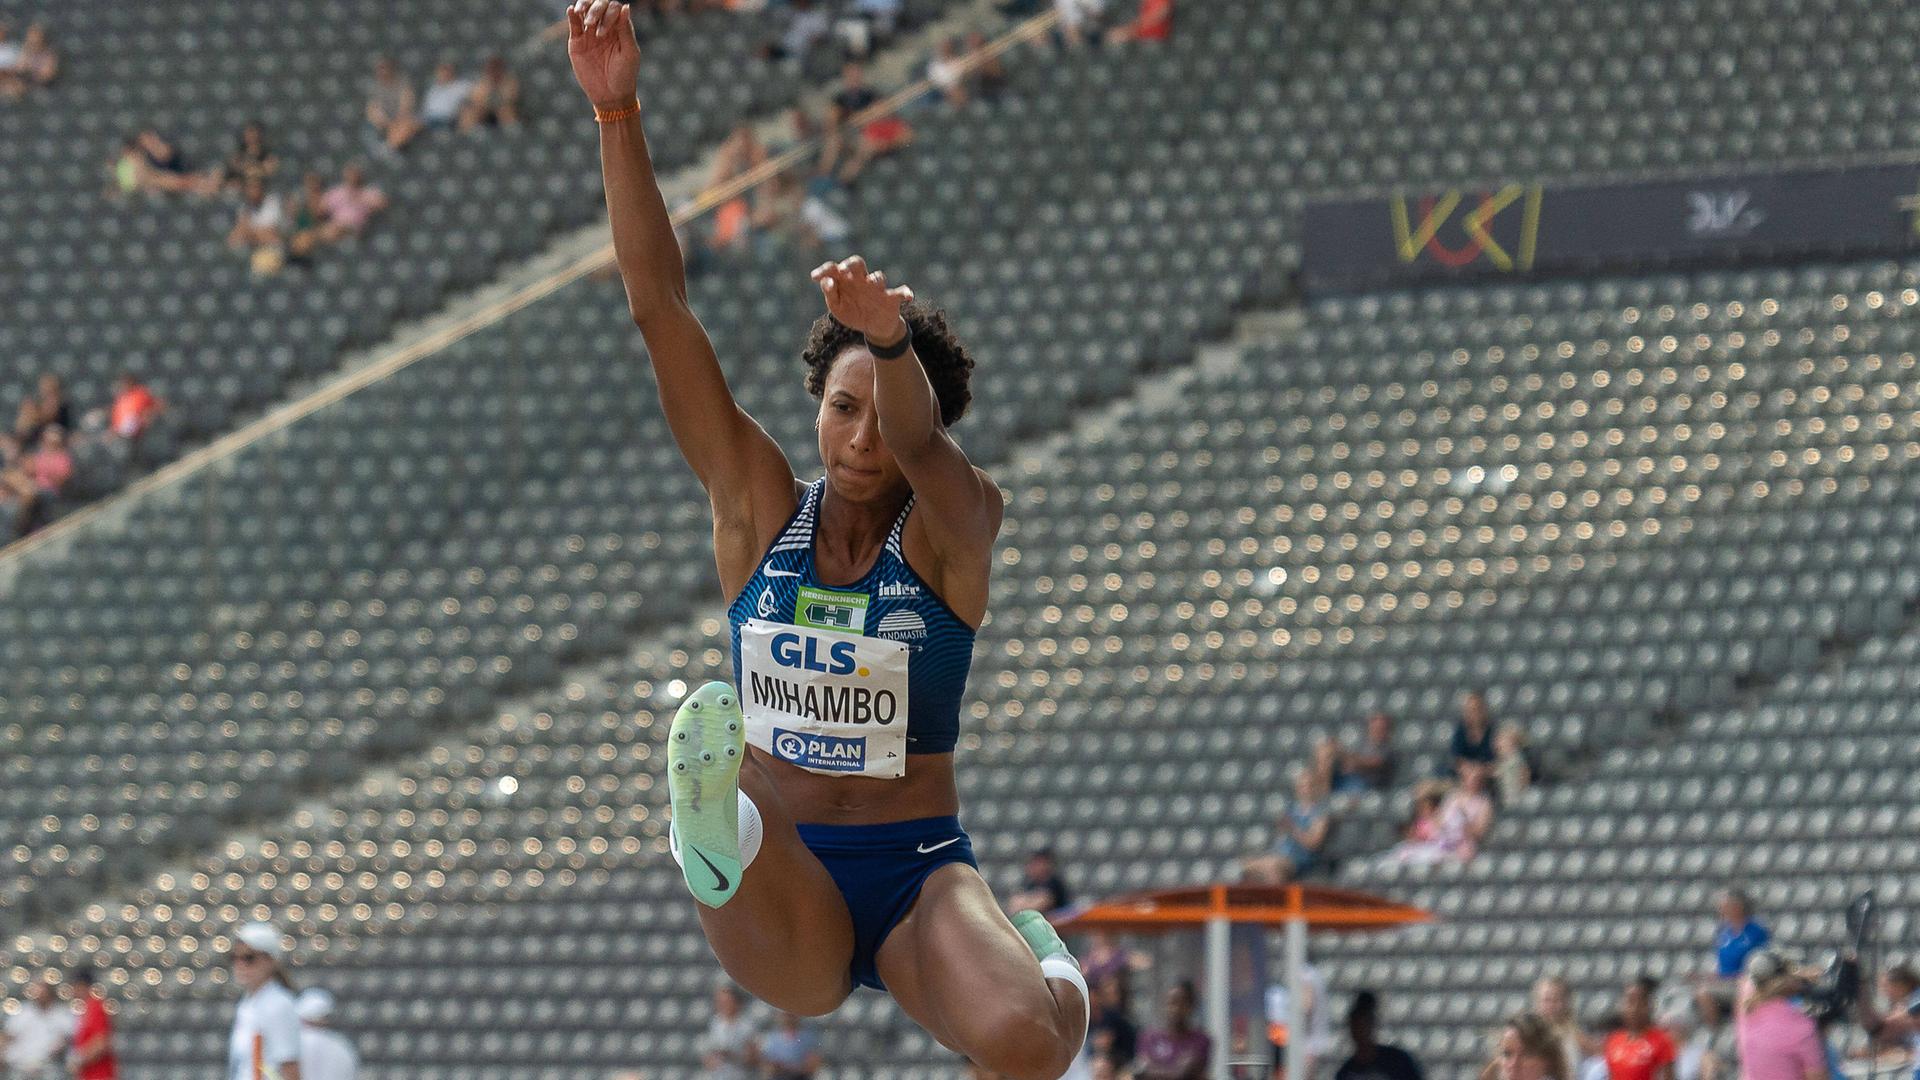 Leichtathletik-Meisterschaften - Malaika Mihambo holt sechsten Titel im Weitsprung